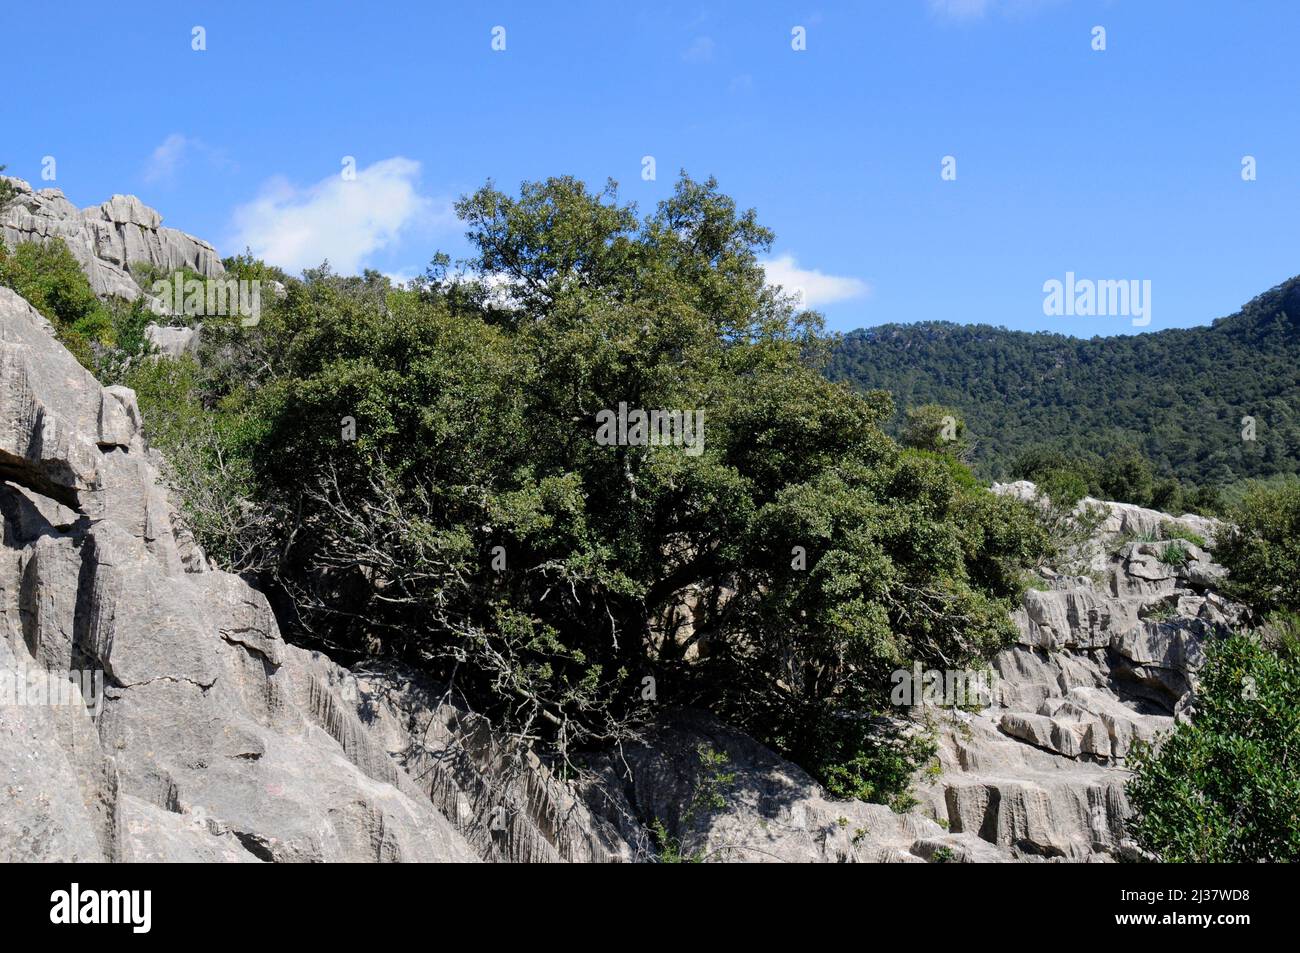 Immergrüne Eiche (Quercus ilex ilex) ist ein immergrüner Baum aus Südeuropa. Dieses Foto wurde auf Mallorca, den Balearen, Spanien aufgenommen. Stockfoto